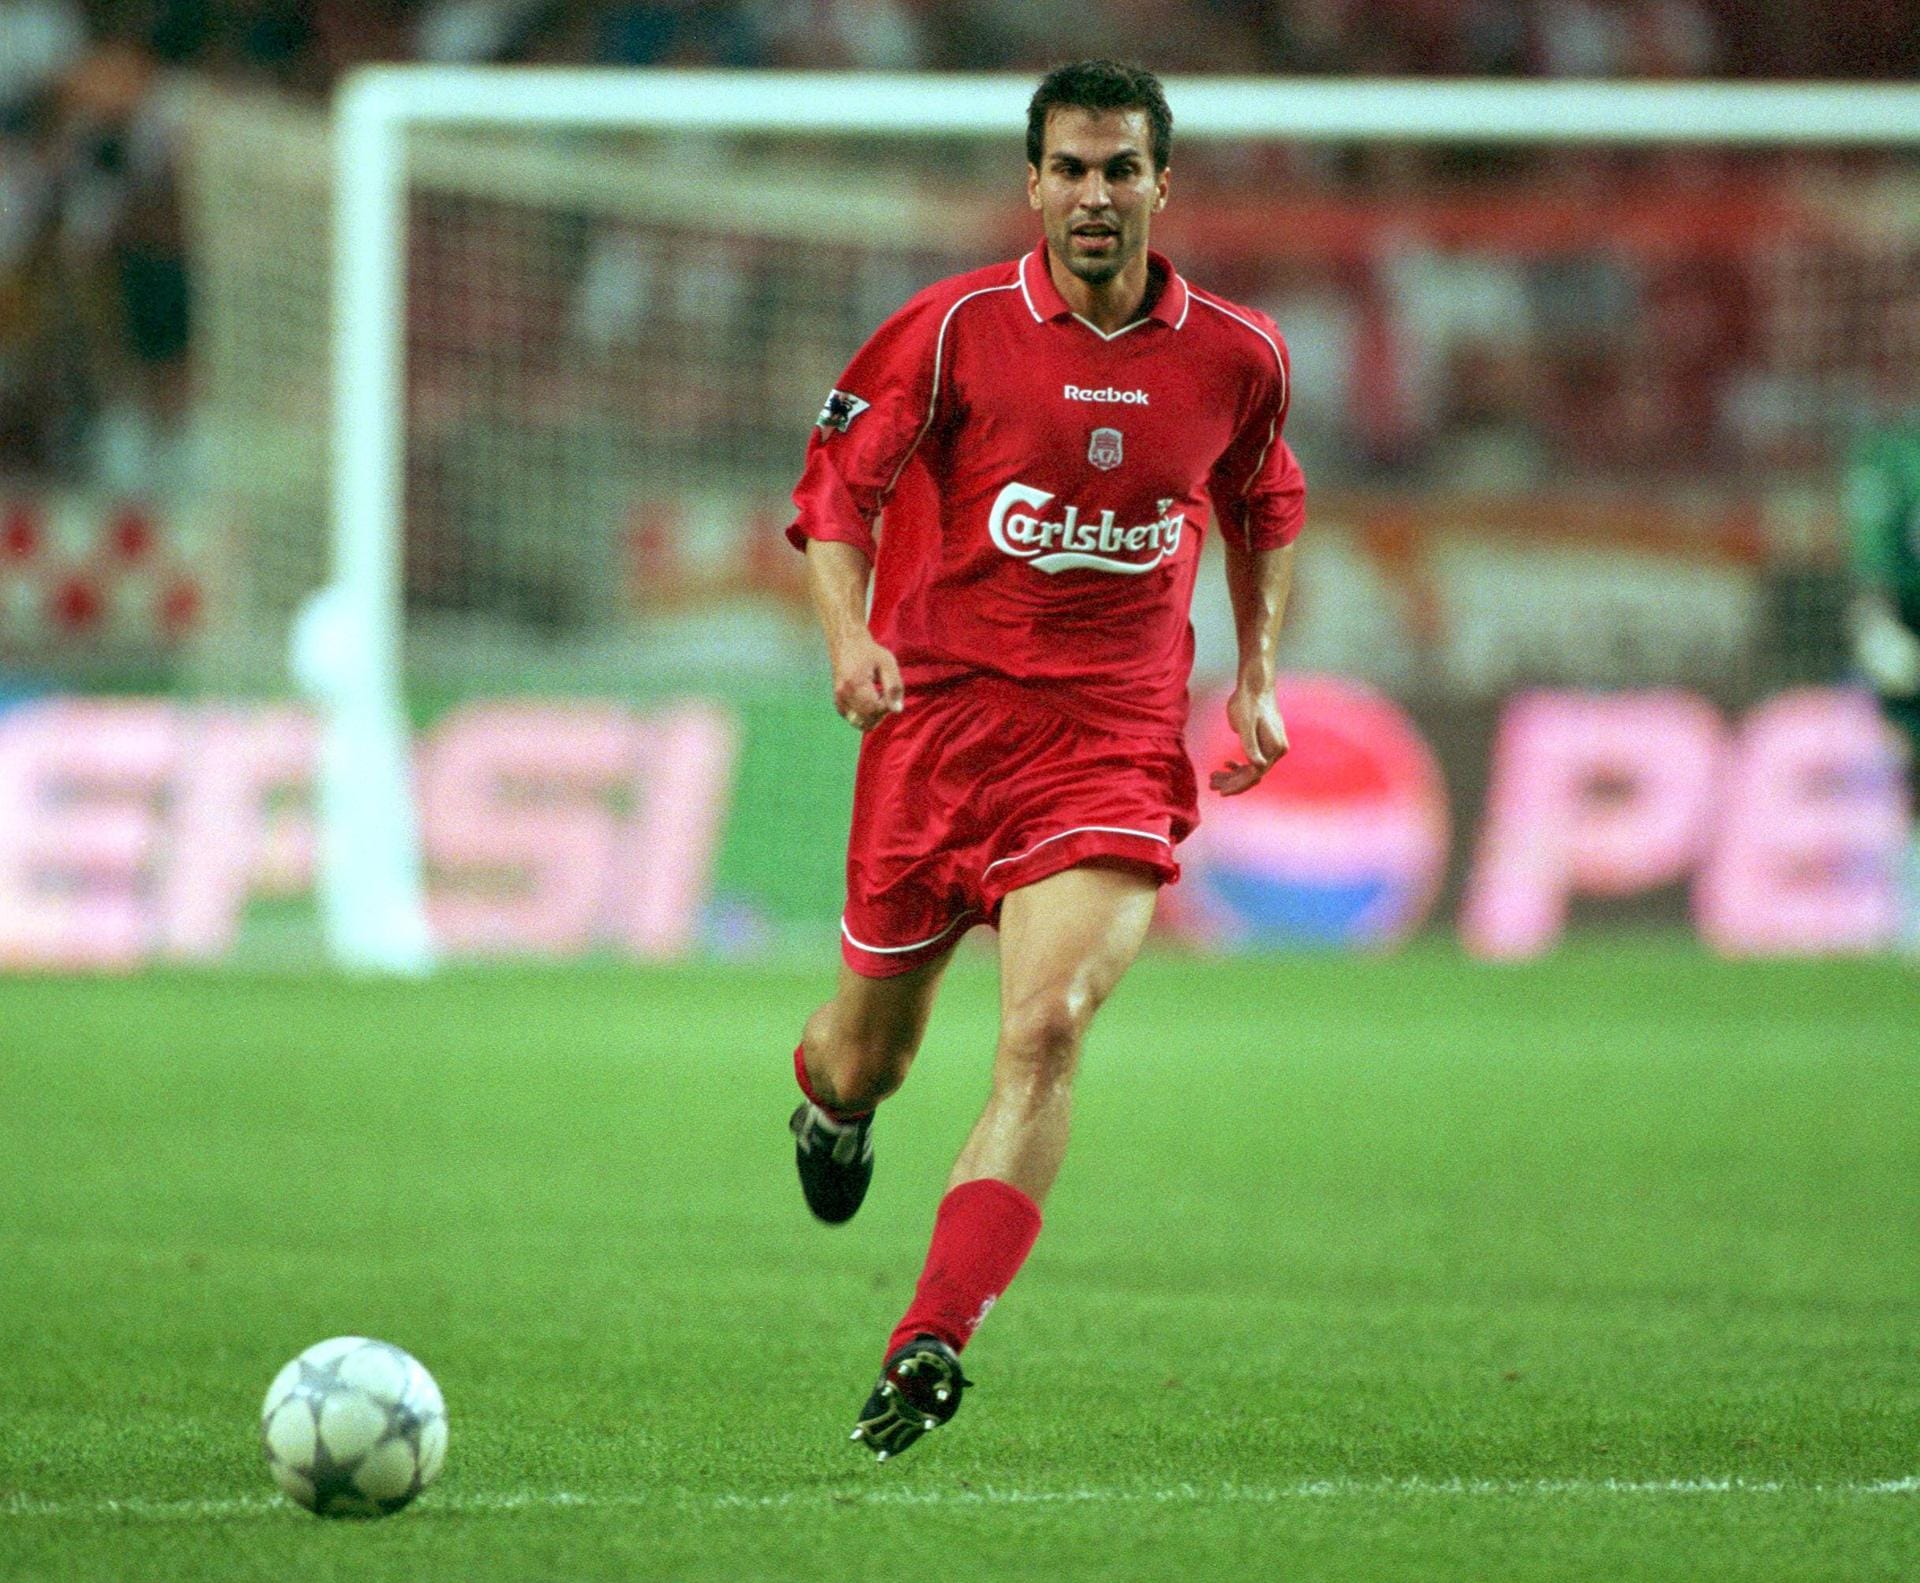 Markus Babbel: Der gebürtige Münchner Markus Babbel und rechter Außenverteidiger spielte von 2000-2003 für die "Reds" aus Liverpool und wurde anschließend für eine Saison zu Blackburn Rovers ausgeliehen.